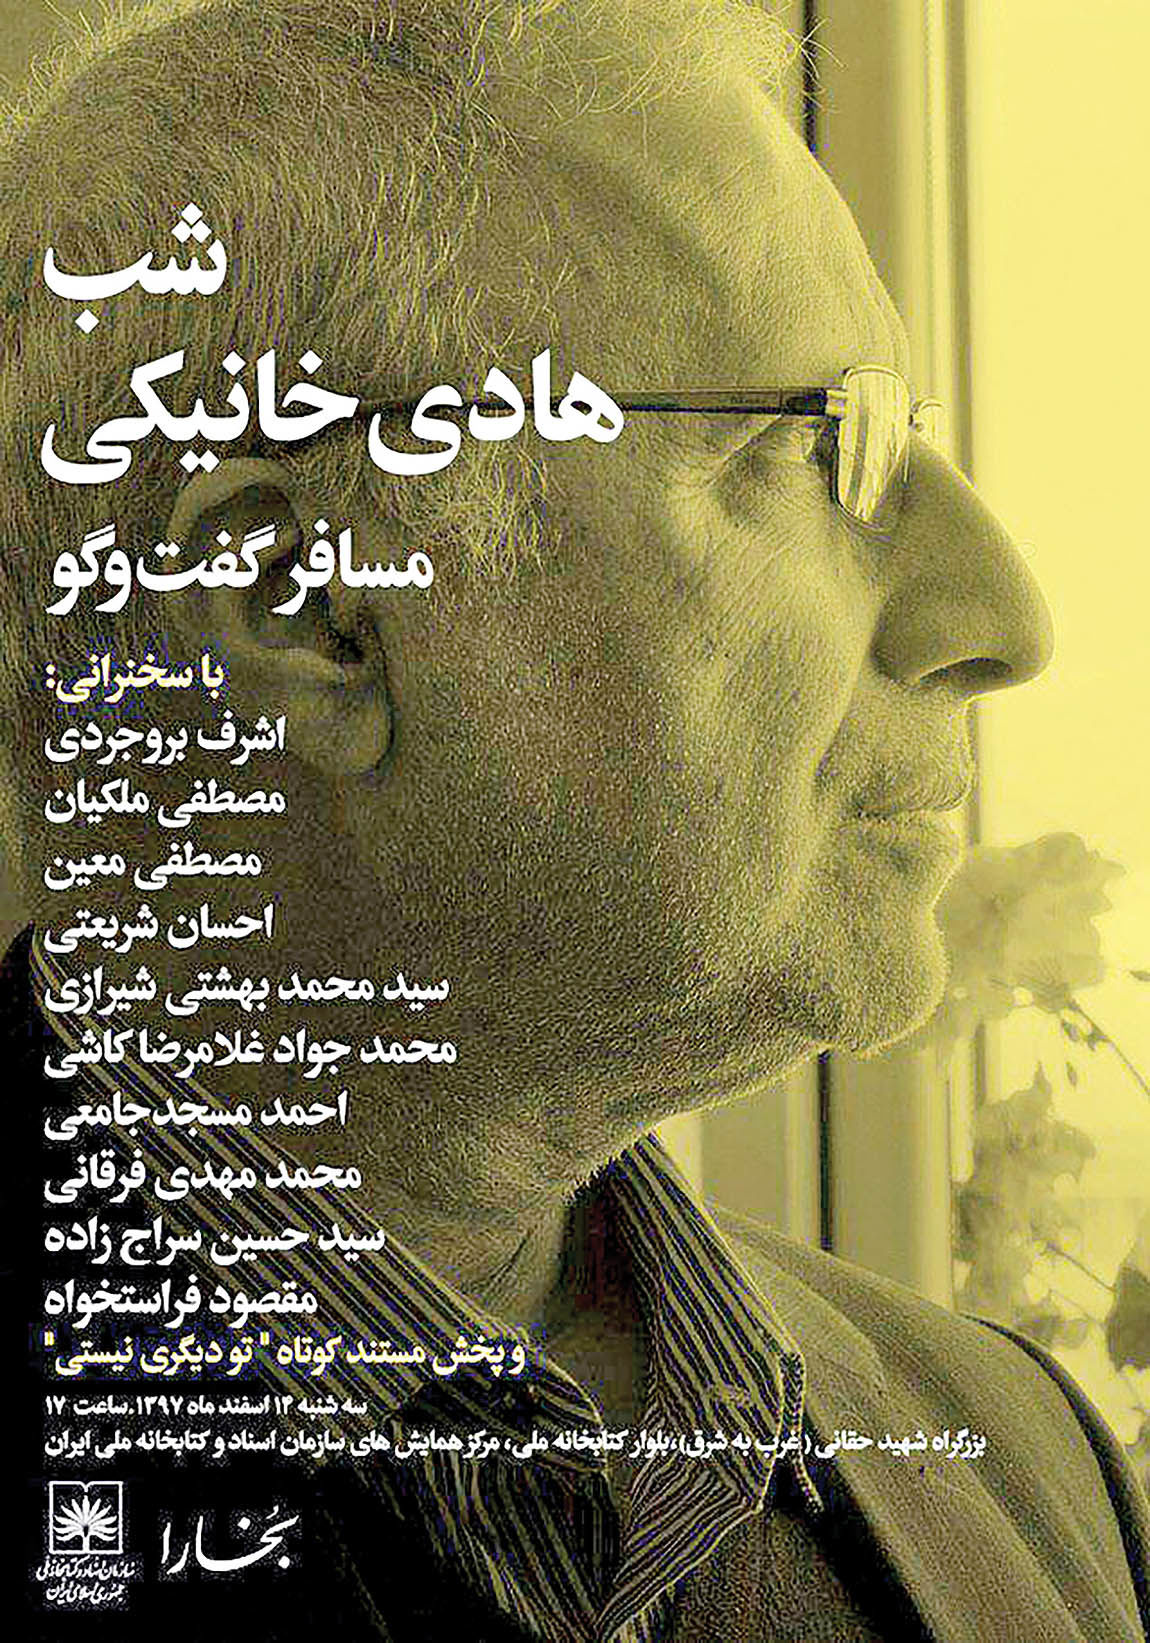 شب هادی خانیکی در کتابخانه ملی ایران